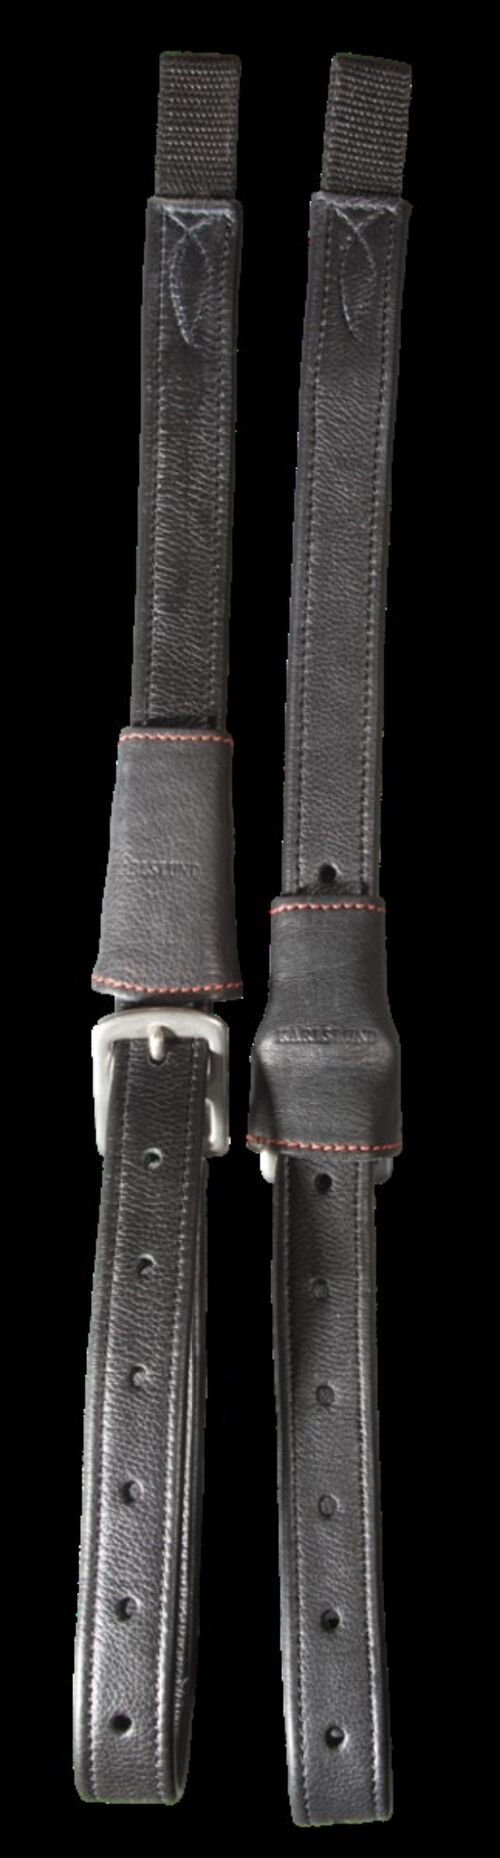 Lóki stirrup leathers w. buckle, black, 70cm